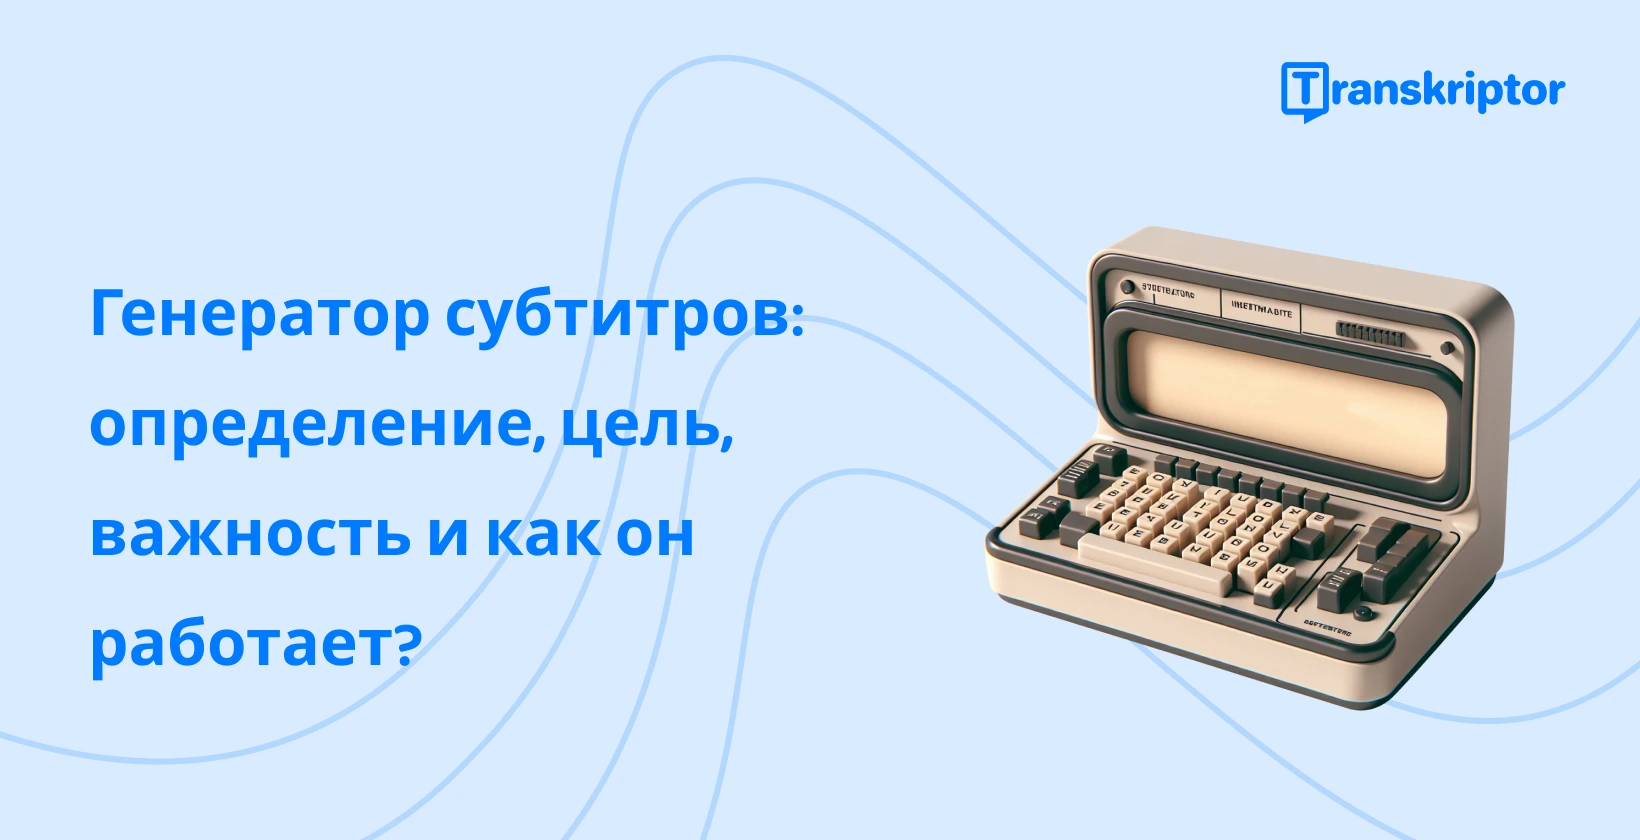 Автоматическая генерация субтитров Transkriptor представлена винтажной пишущей машинкой, простым и бесплатным онлайн-использованием.